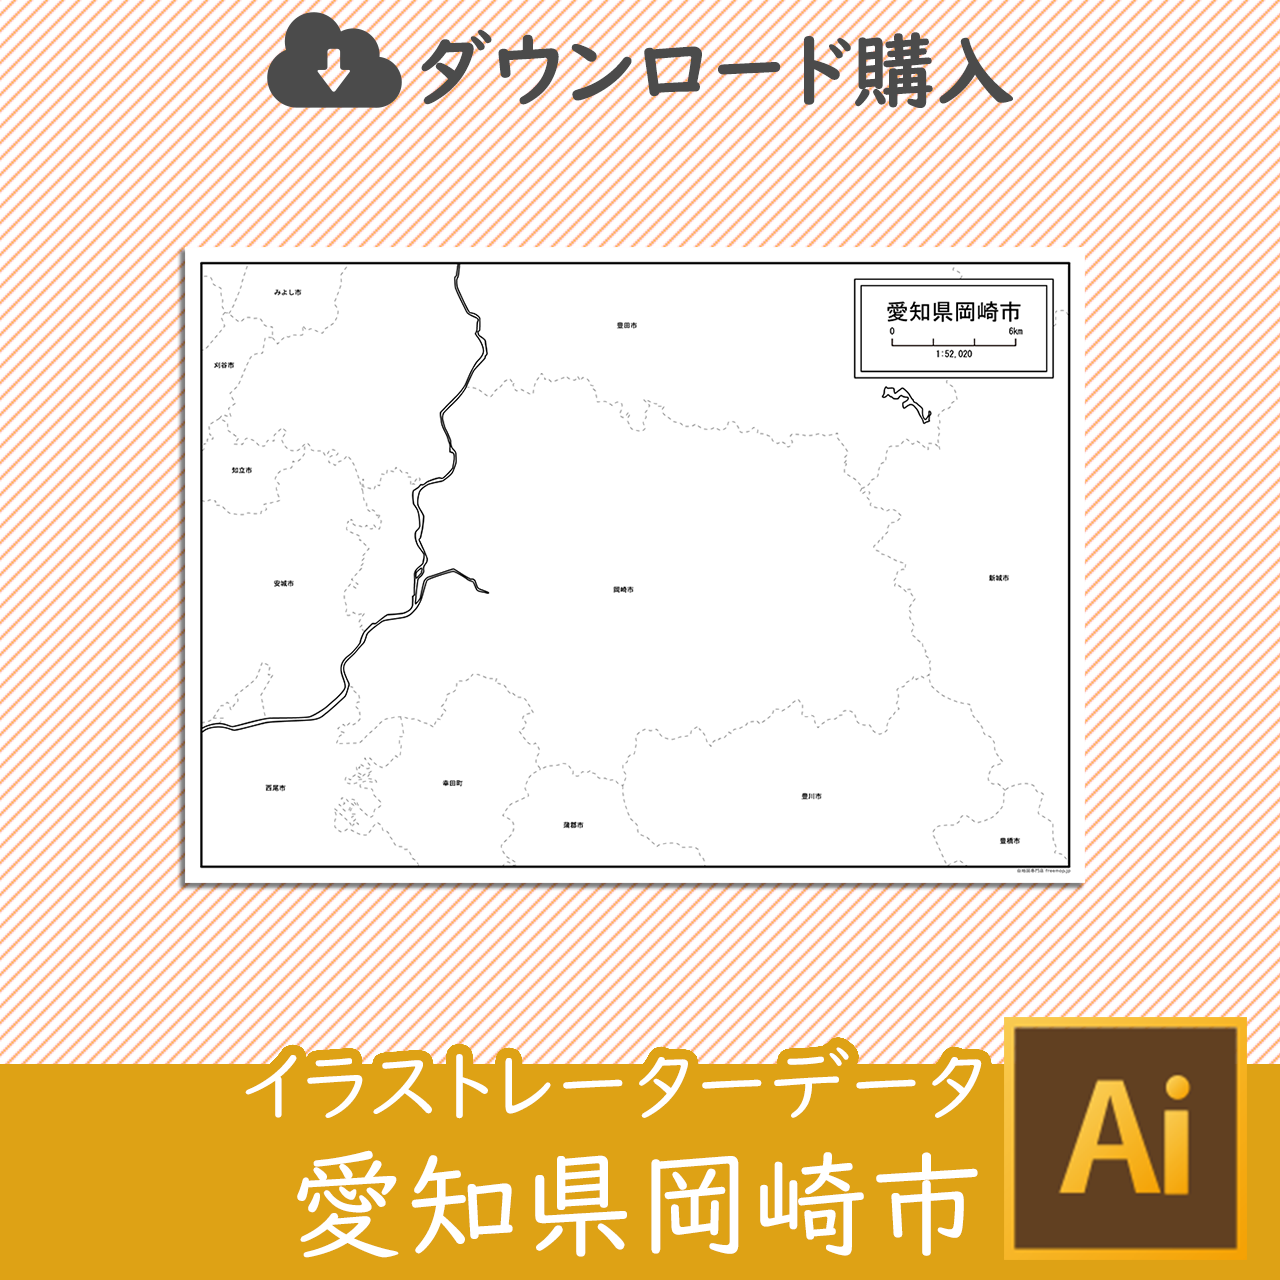 岡崎市のaiデータのサムネイル画像